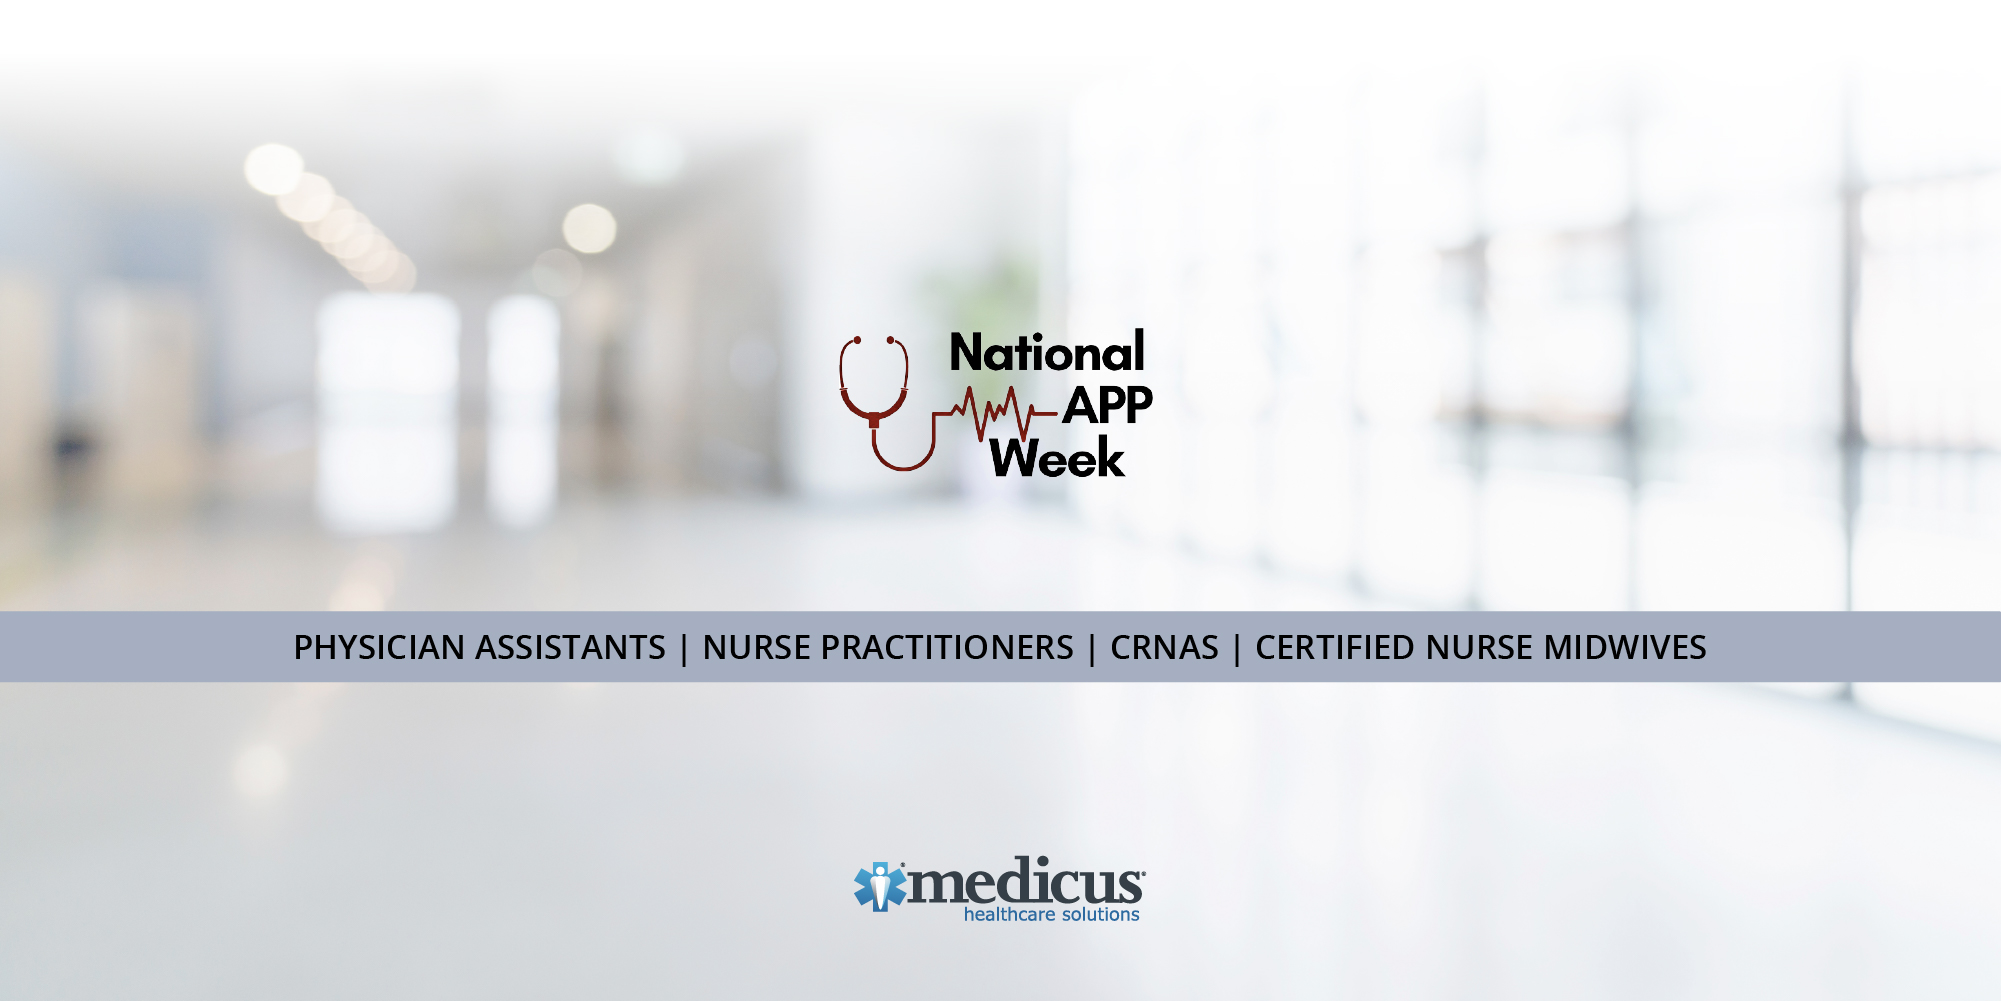 Medicus is proud to celebrate National APP Week! 